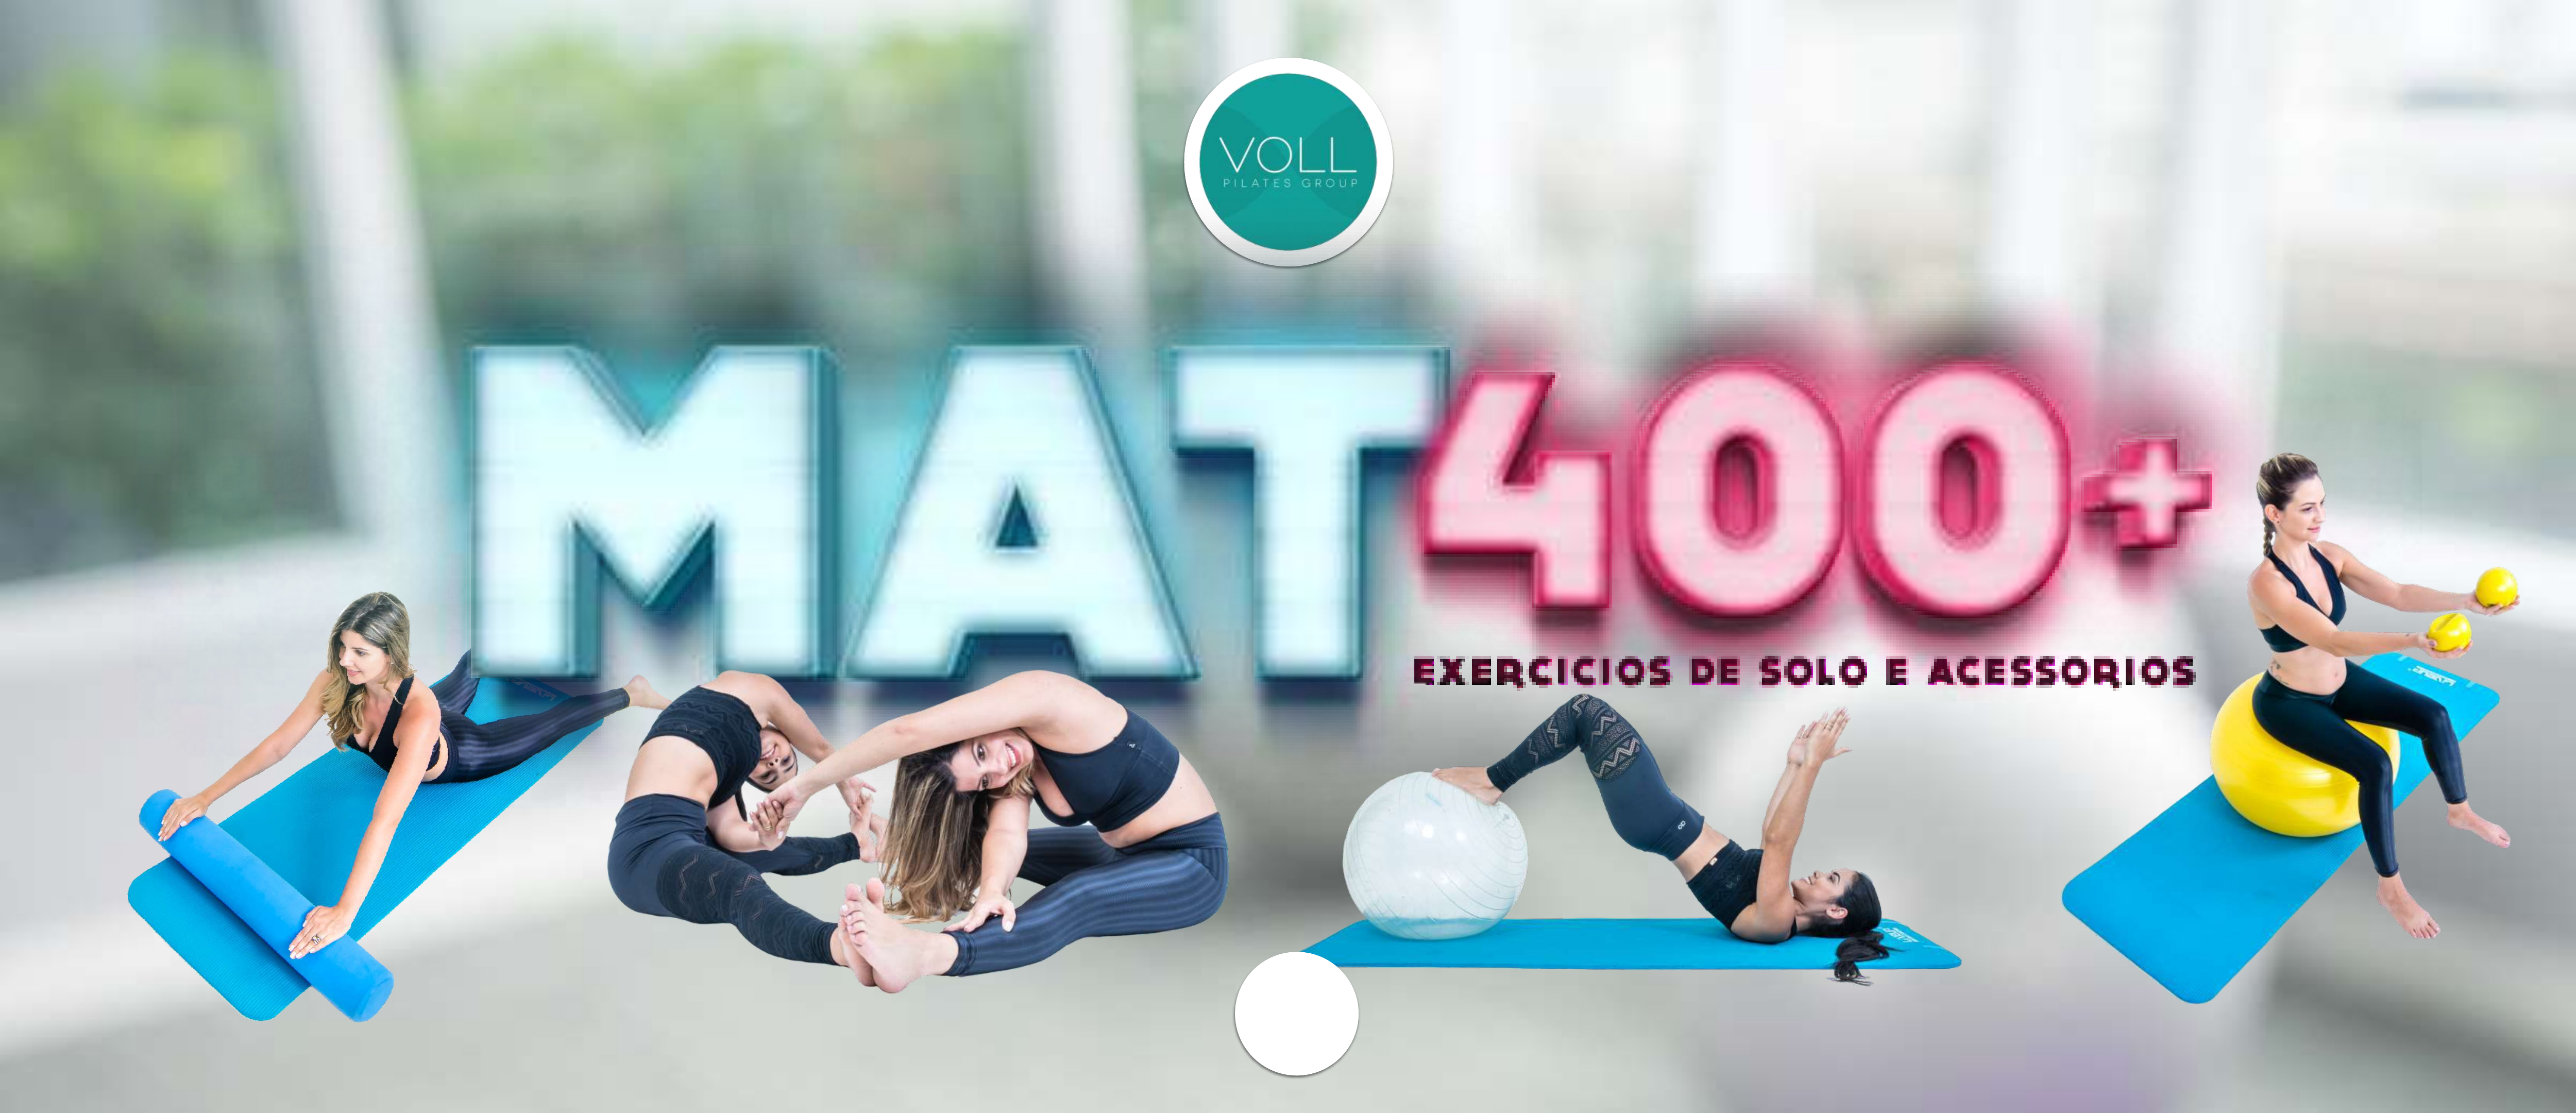 MAT PILATES 400 EXERCICIOS DE SOLO E ACESSORIOS - Pilates (solo